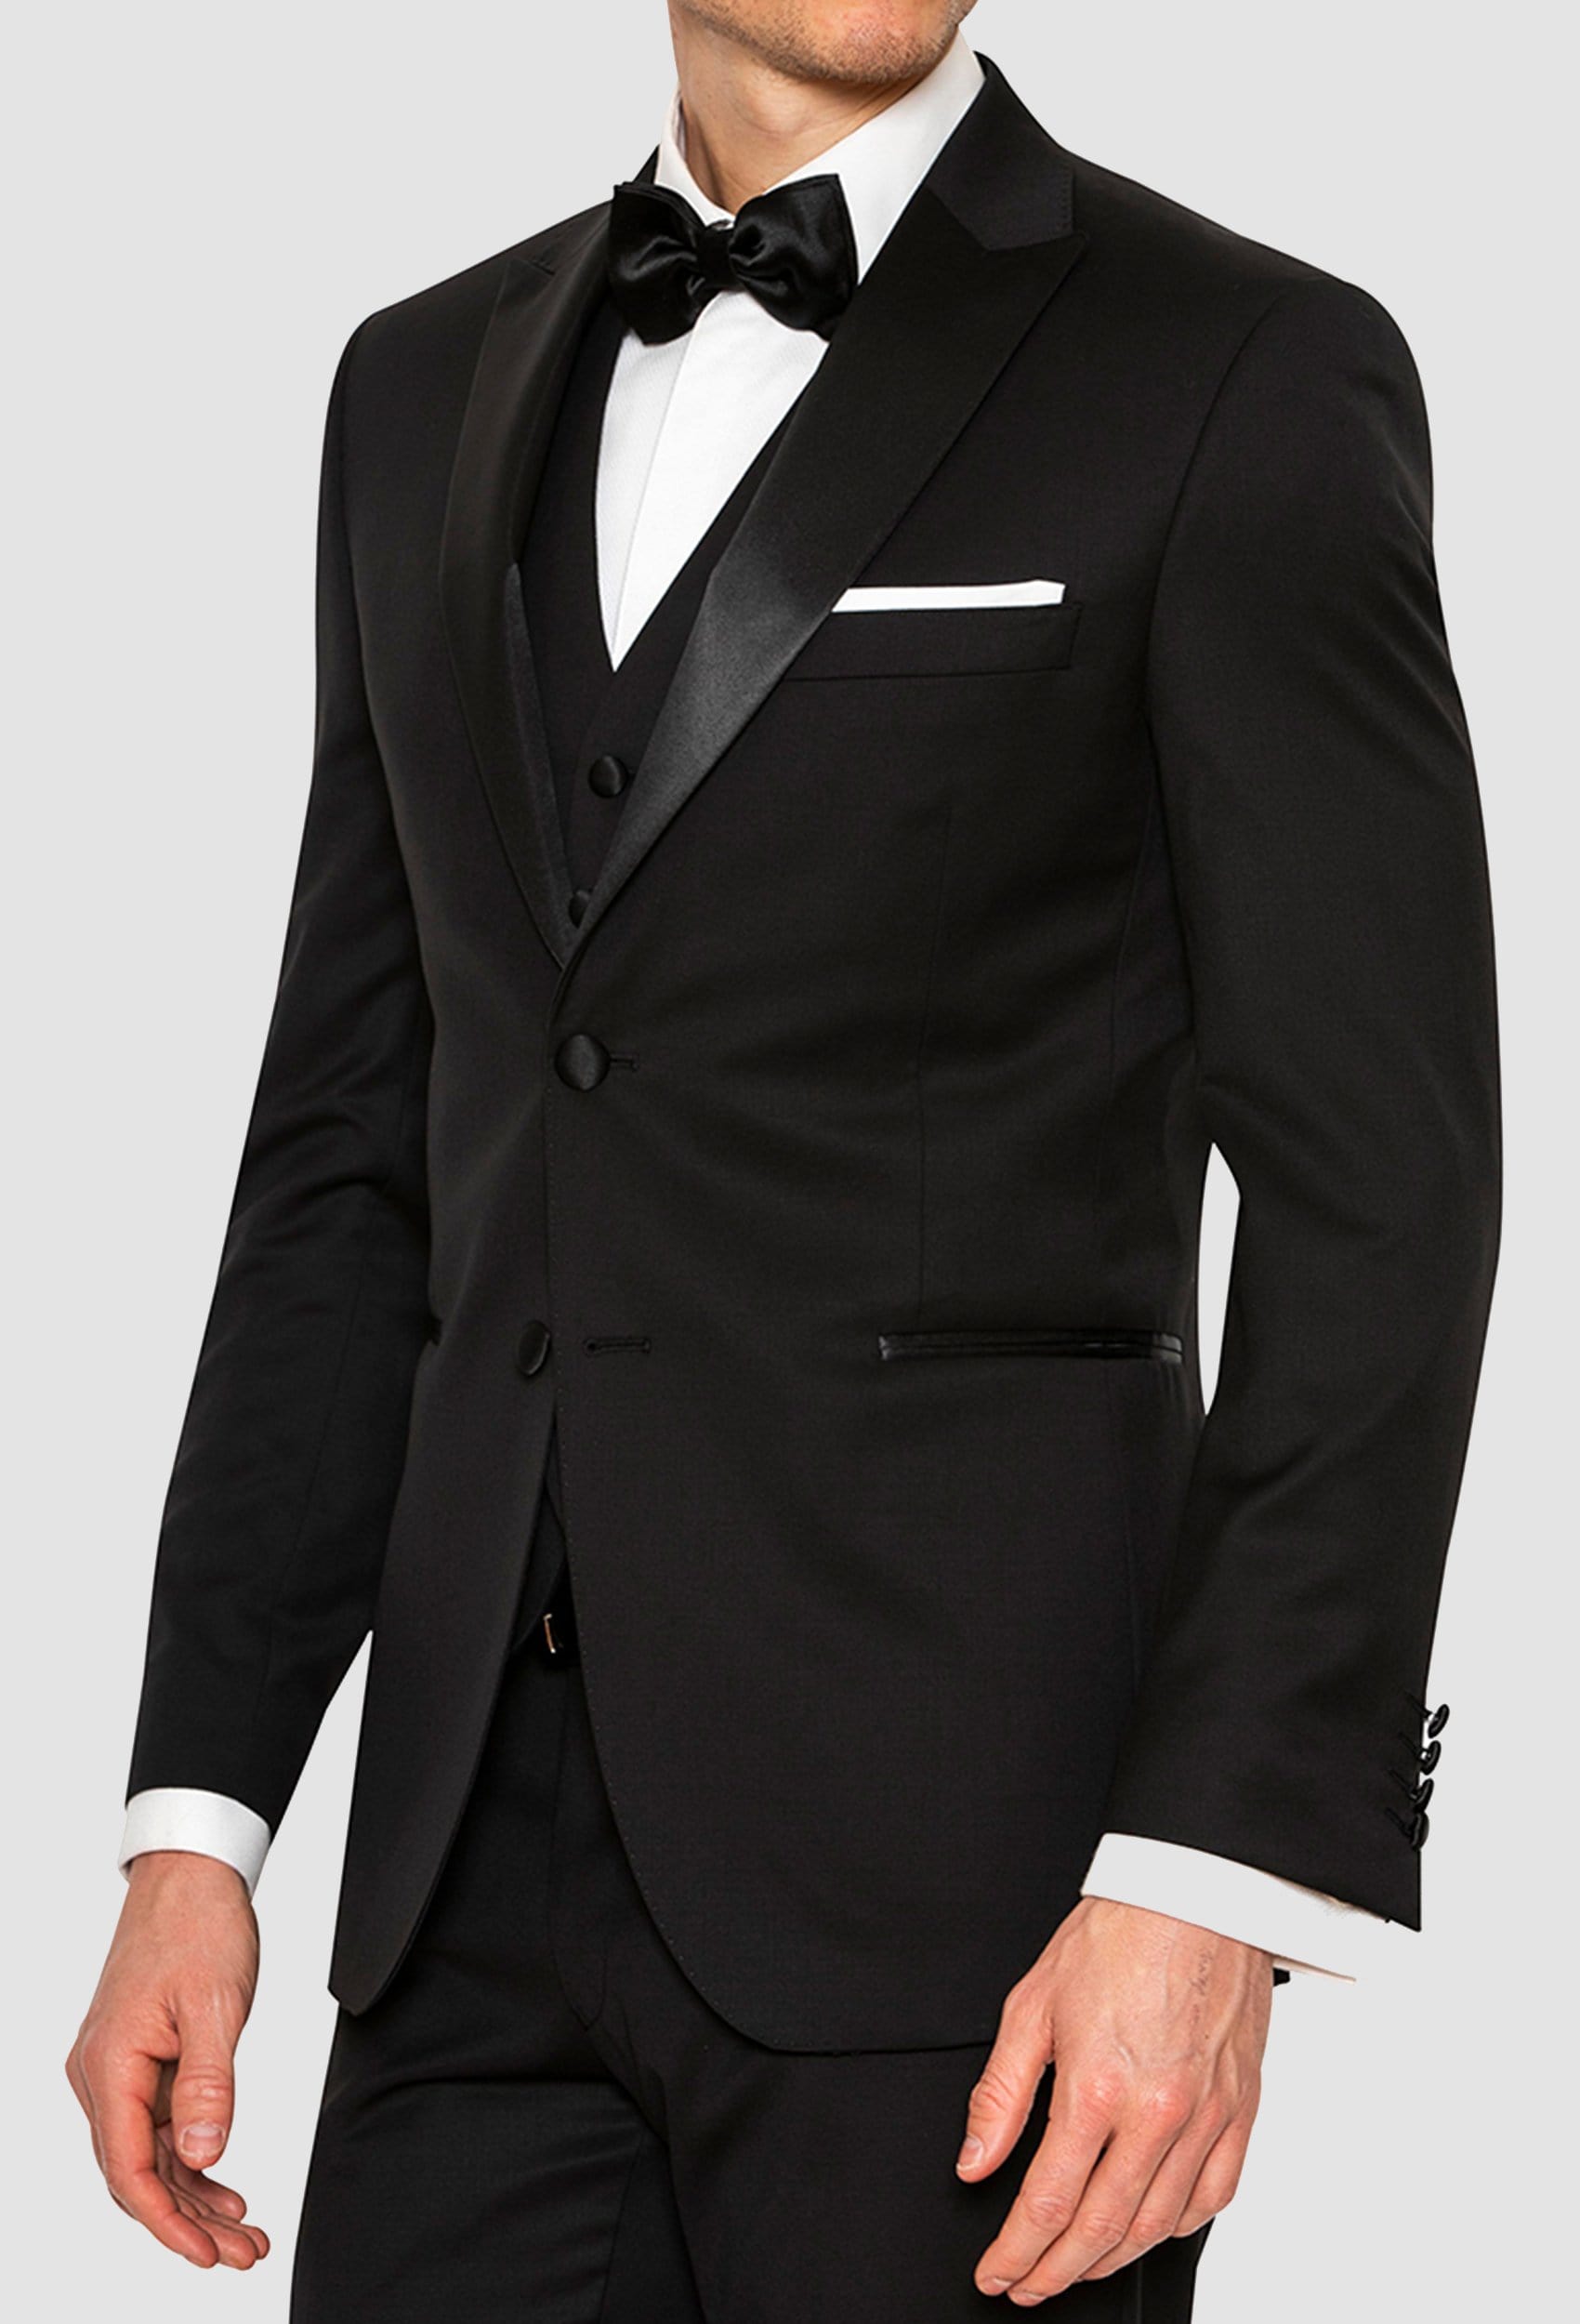 Joe Black slim fit sloane evening suit in black pure wool – Mens Suit ...